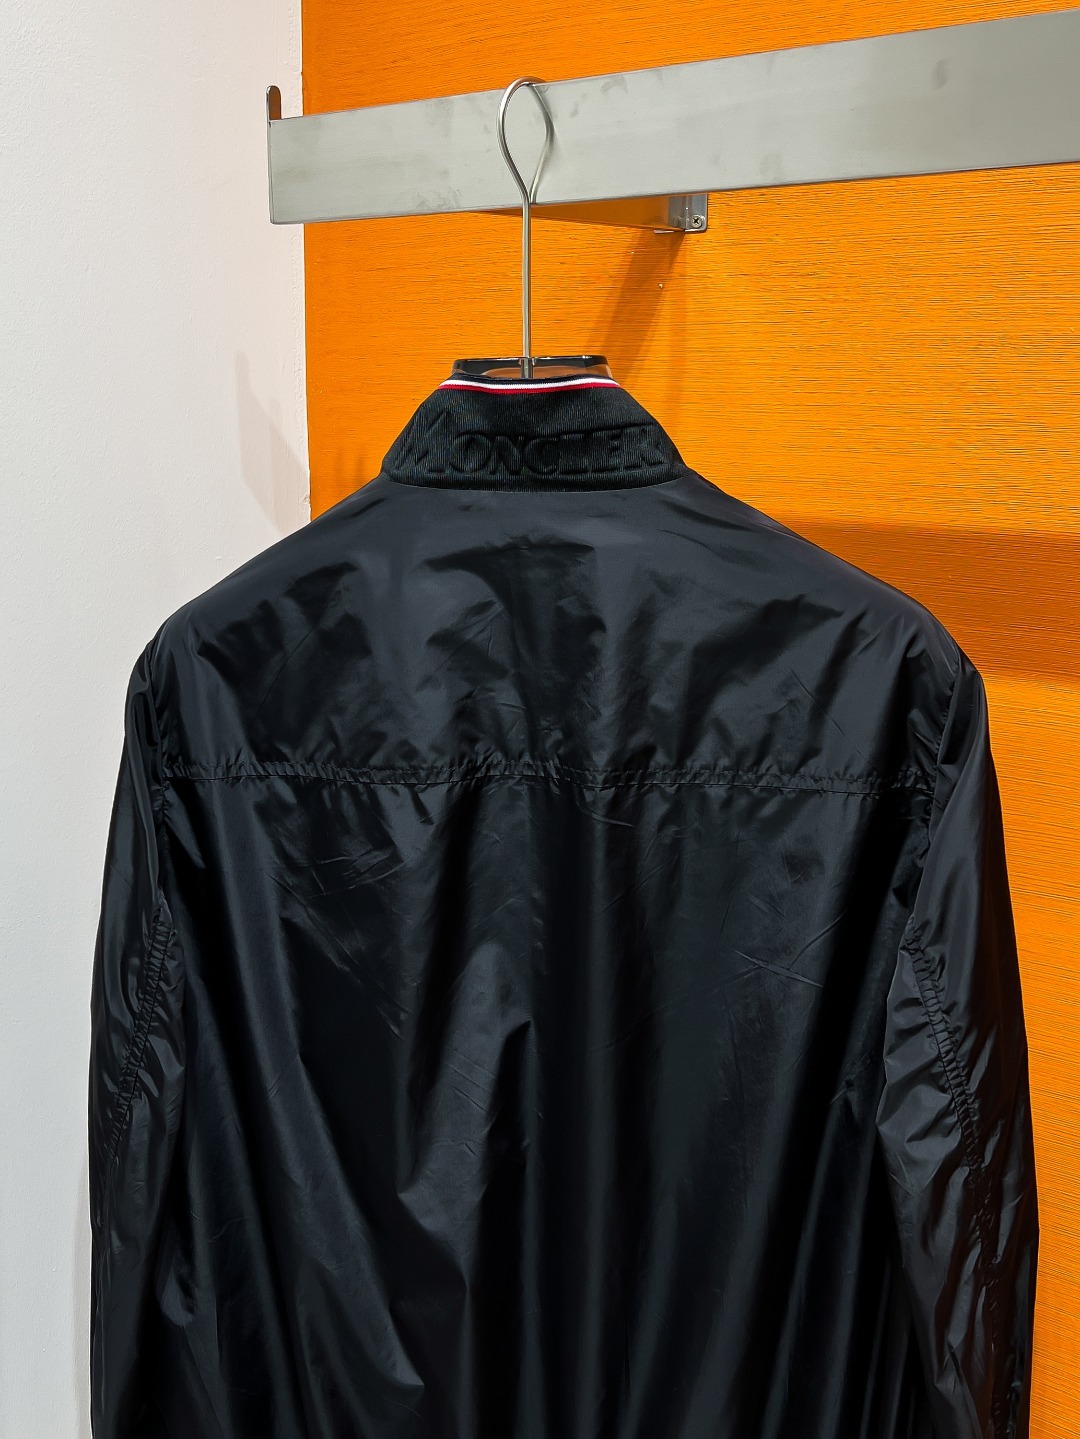 MO#24ss风衣系男装高端梭织外套高端精品系列男女同款贸易公司渠道订单官网专柜在售系列业内独家首发经典